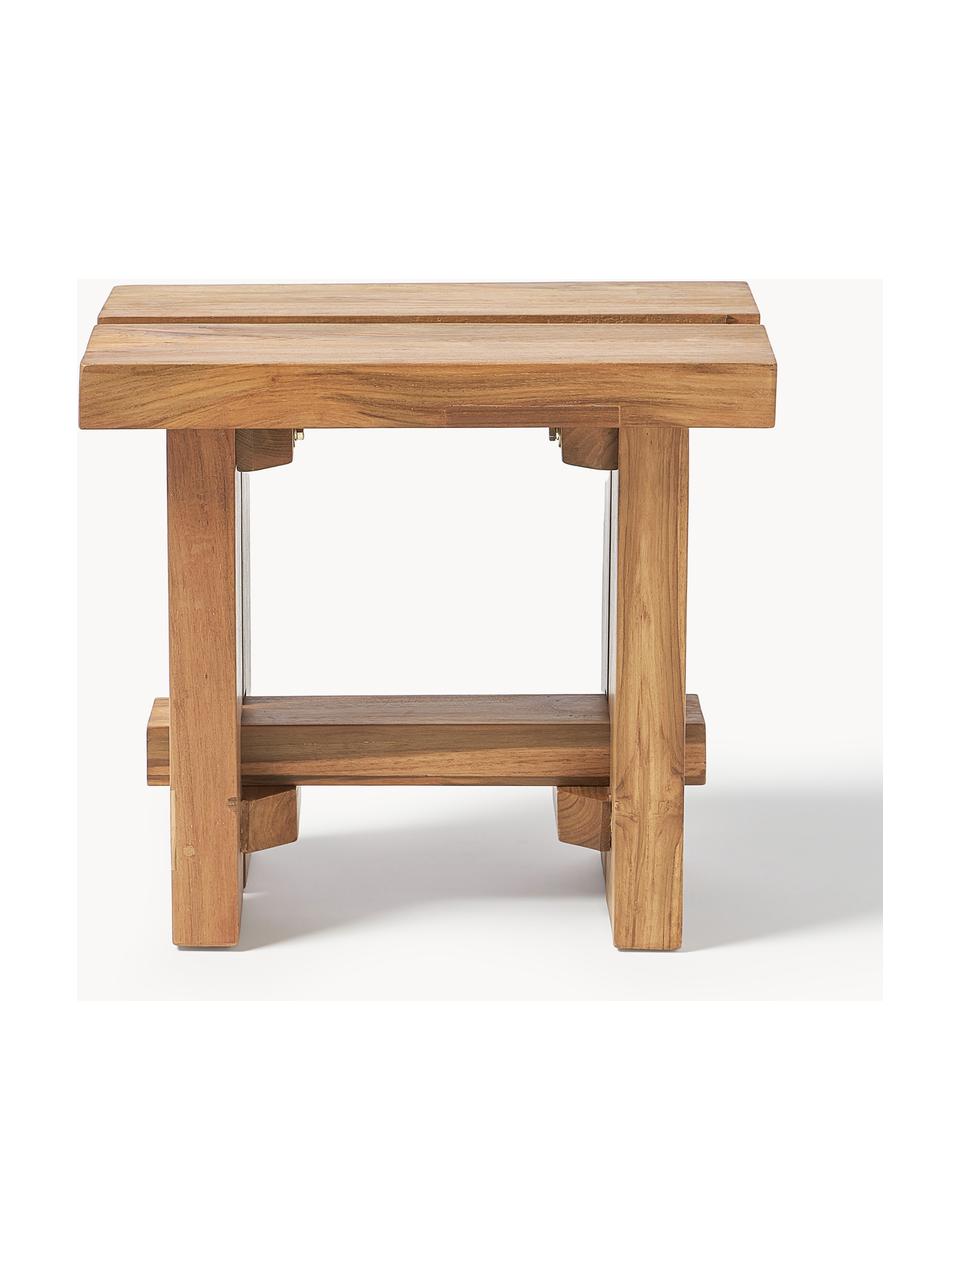 Stolička z teakového dřeva Hugo, Mořené teakové dřevo

Tento produkt je vyroben z udržitelných zdrojů dřeva s certifikací FSC®., Mořené teakové dřevo, Š 50 cm, V 45 cm